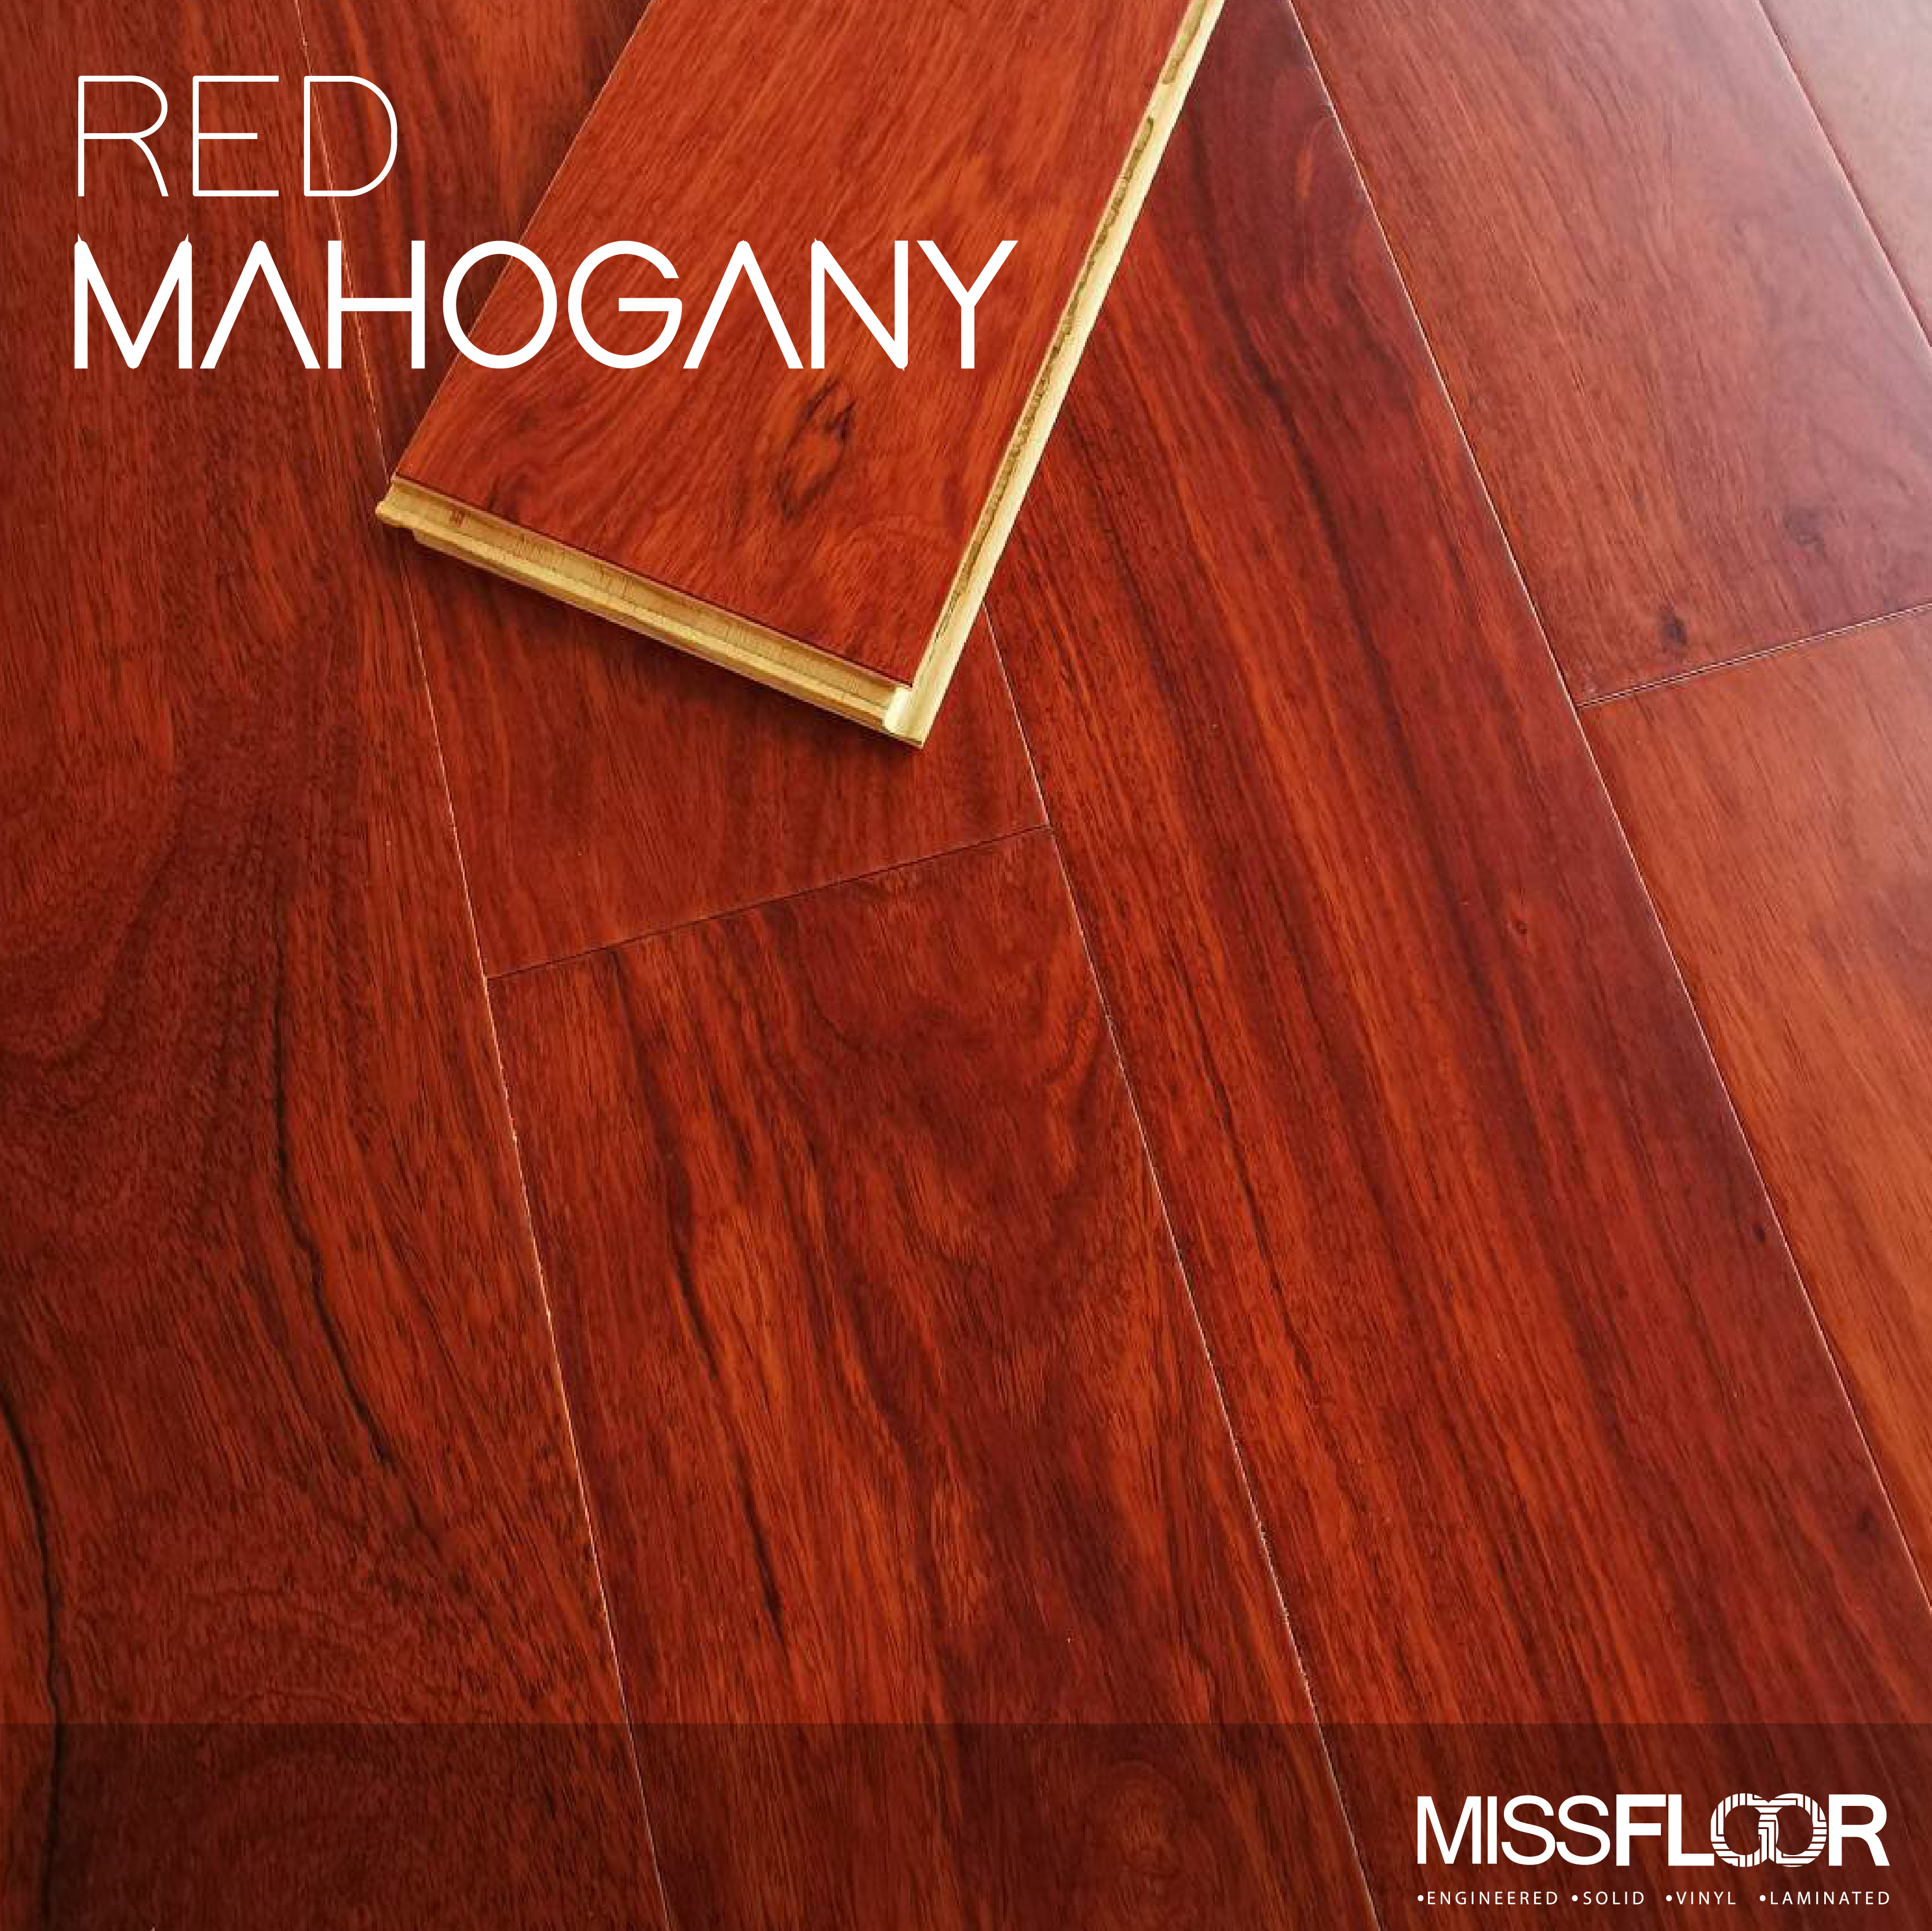 RED MAHOGANY